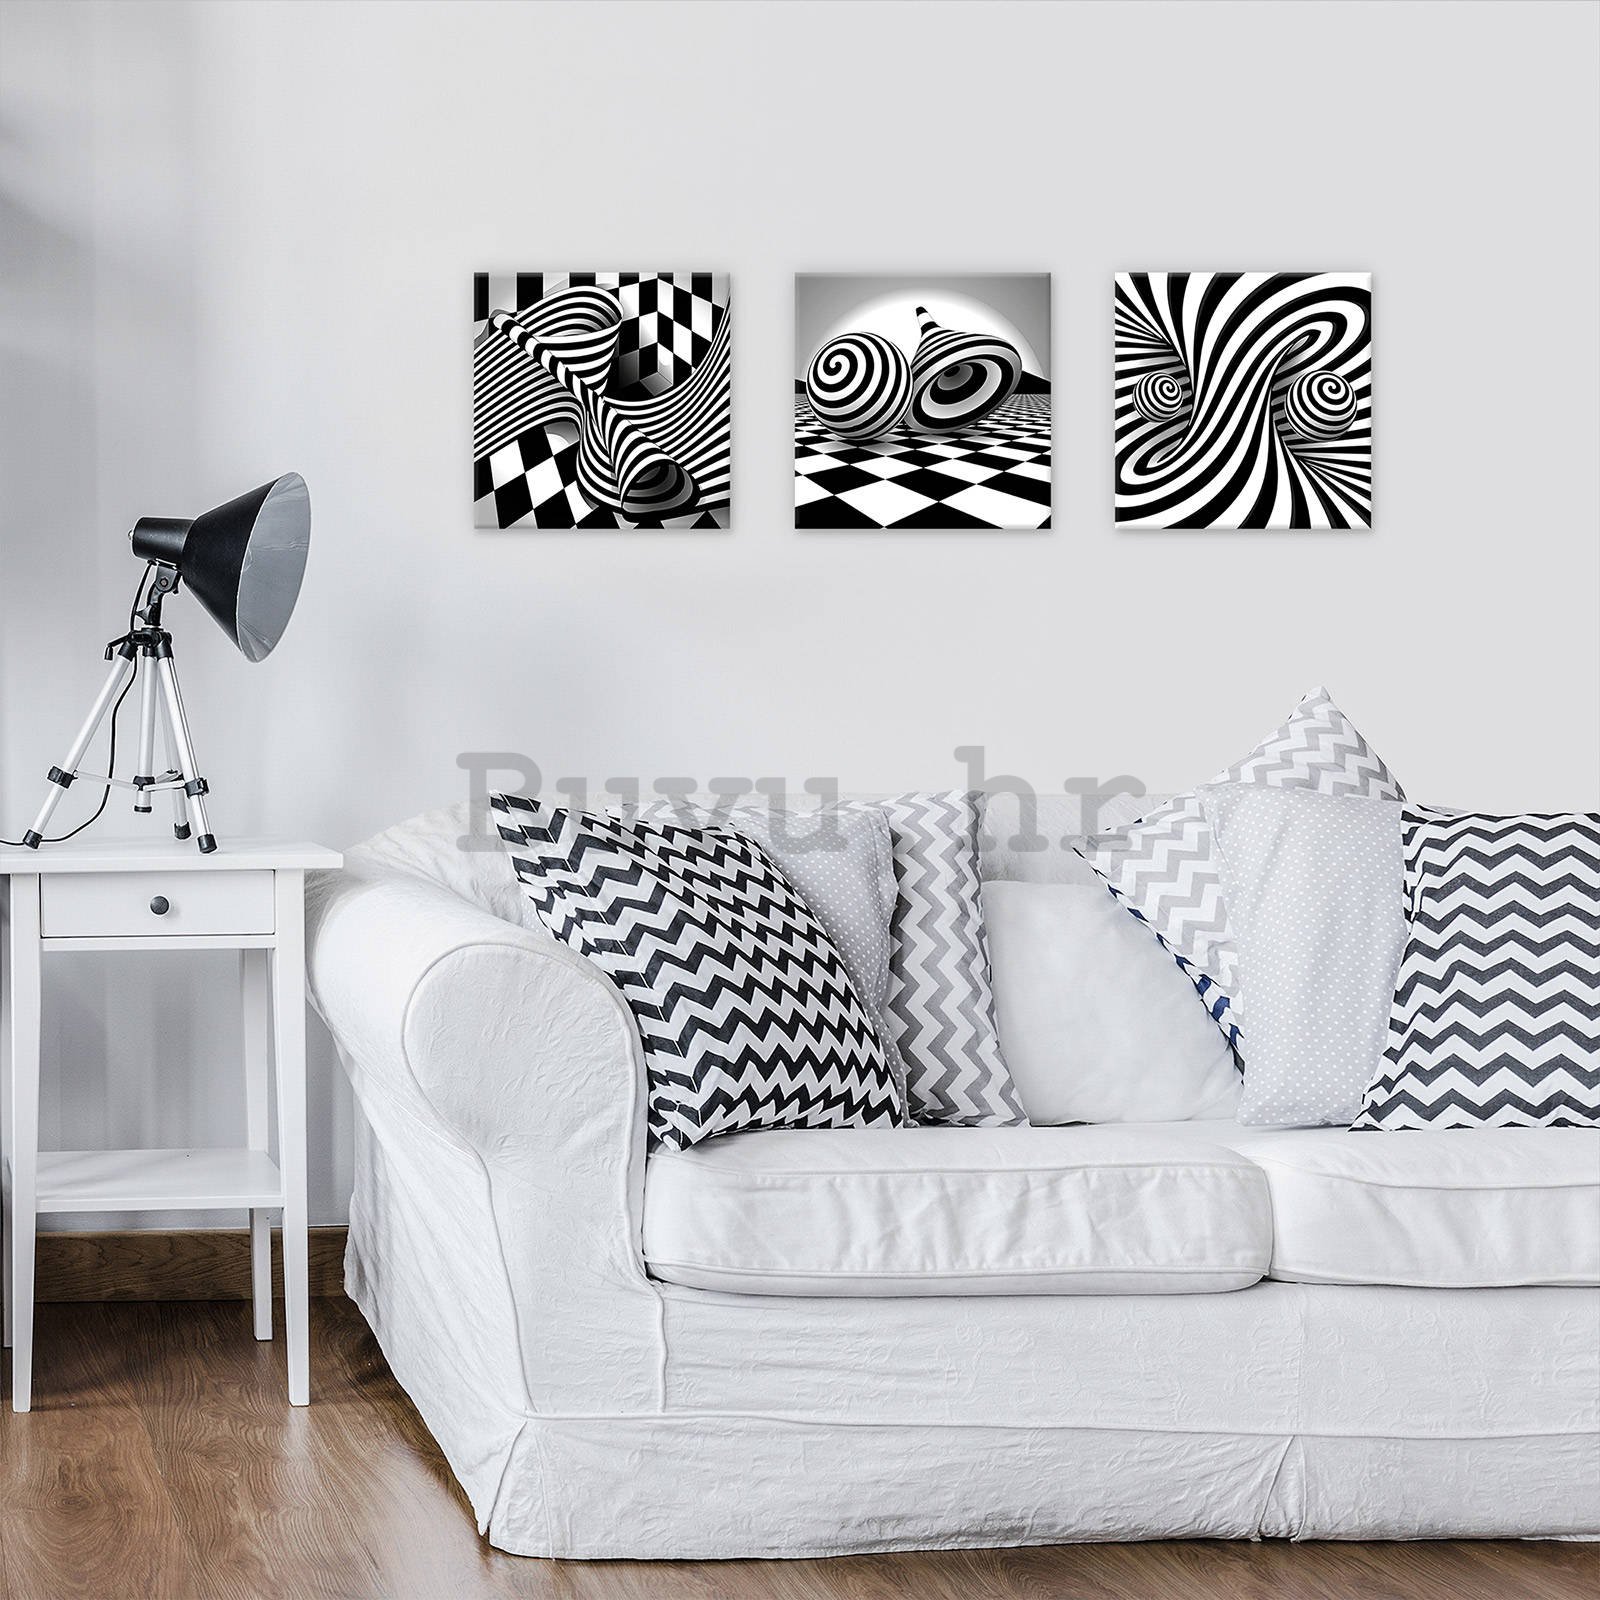 Slika na platnu: 3D crno-bijele spirale i kocke - set 3kom 25x25cm